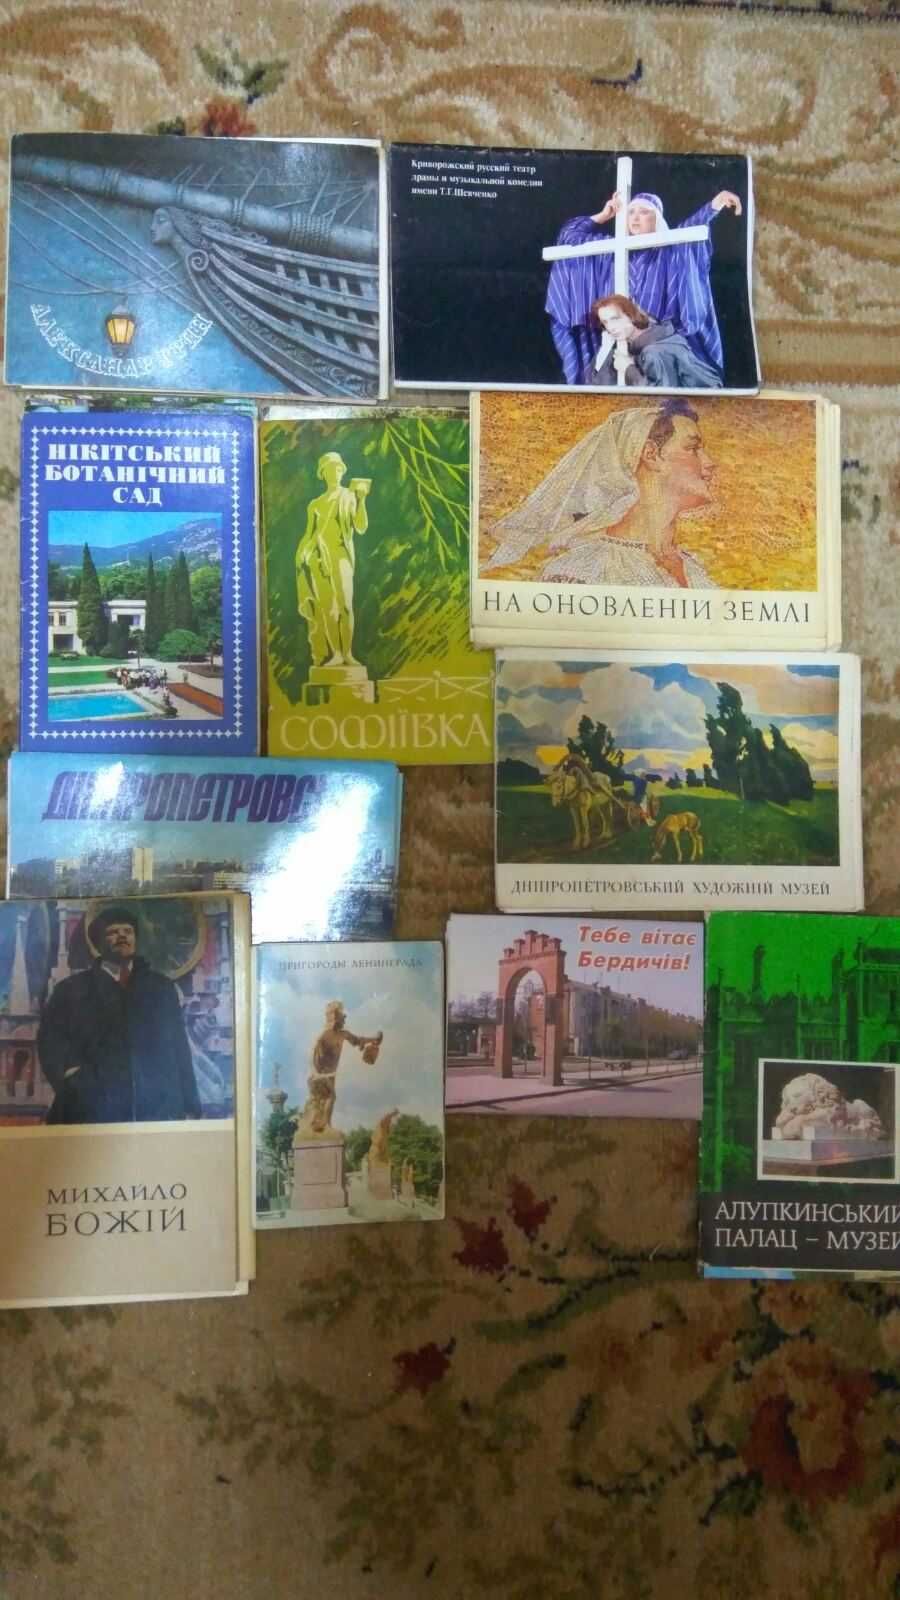 Комплекты открыток, путеводители, фотоальбомы периода 1960-1980гг